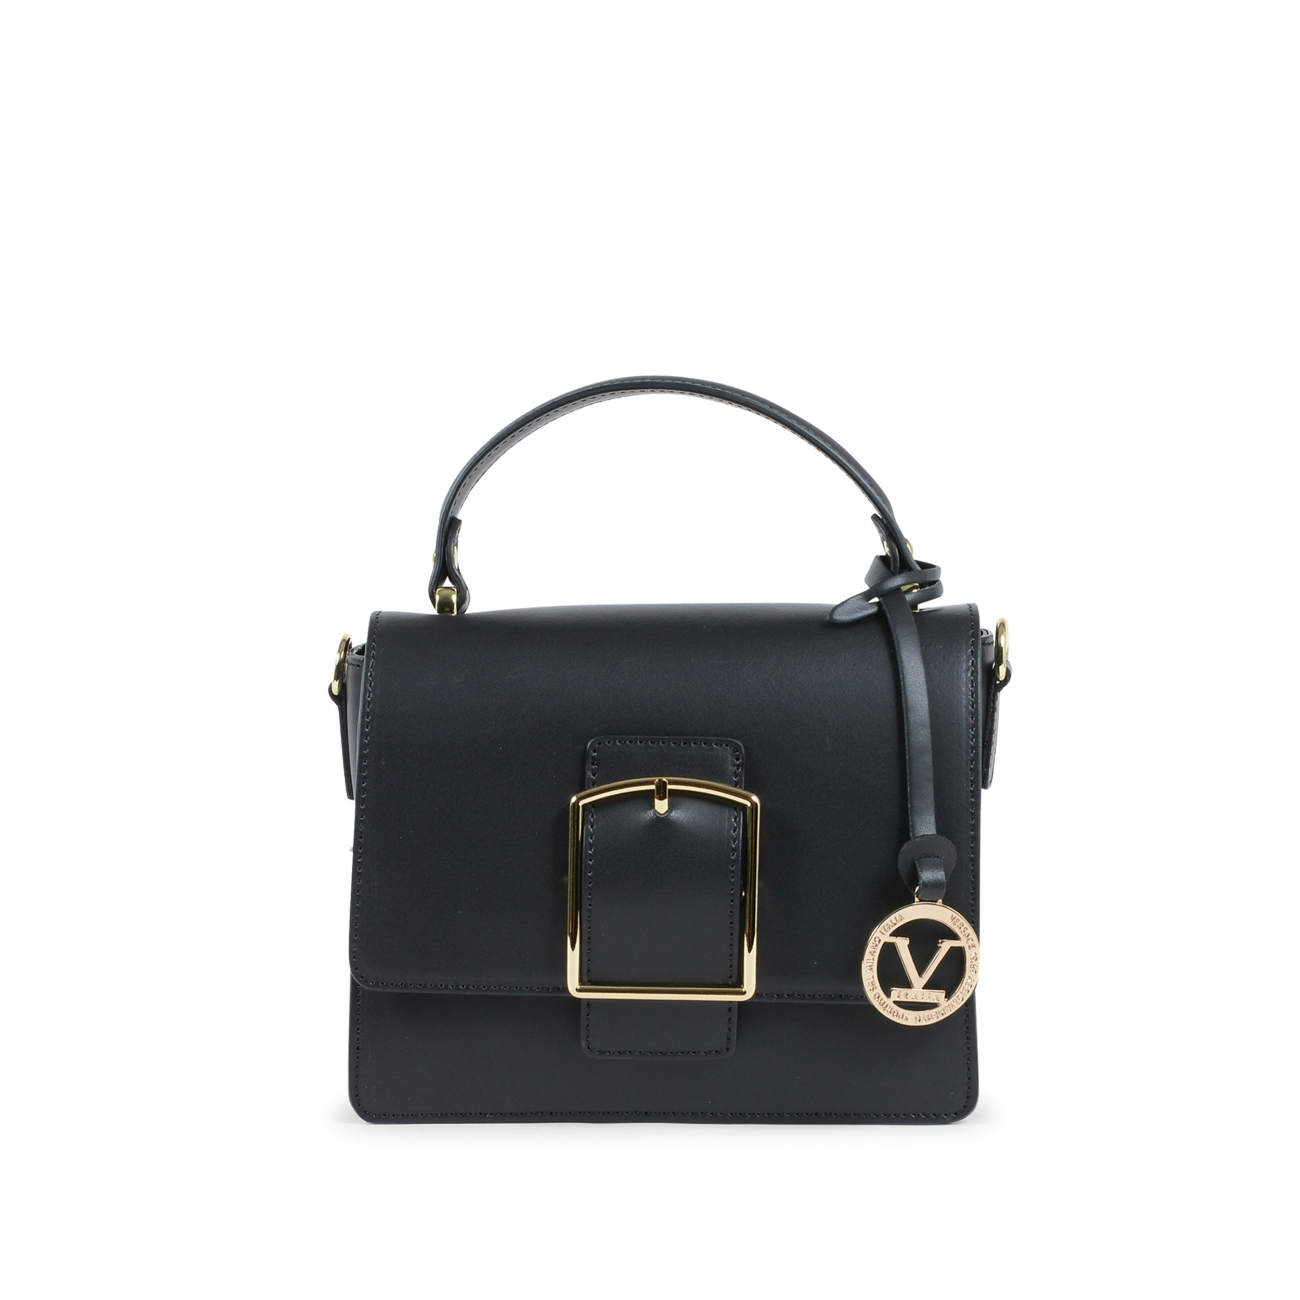 19V69 Italia Womens Handbag Black V505 52 RUGA NERO